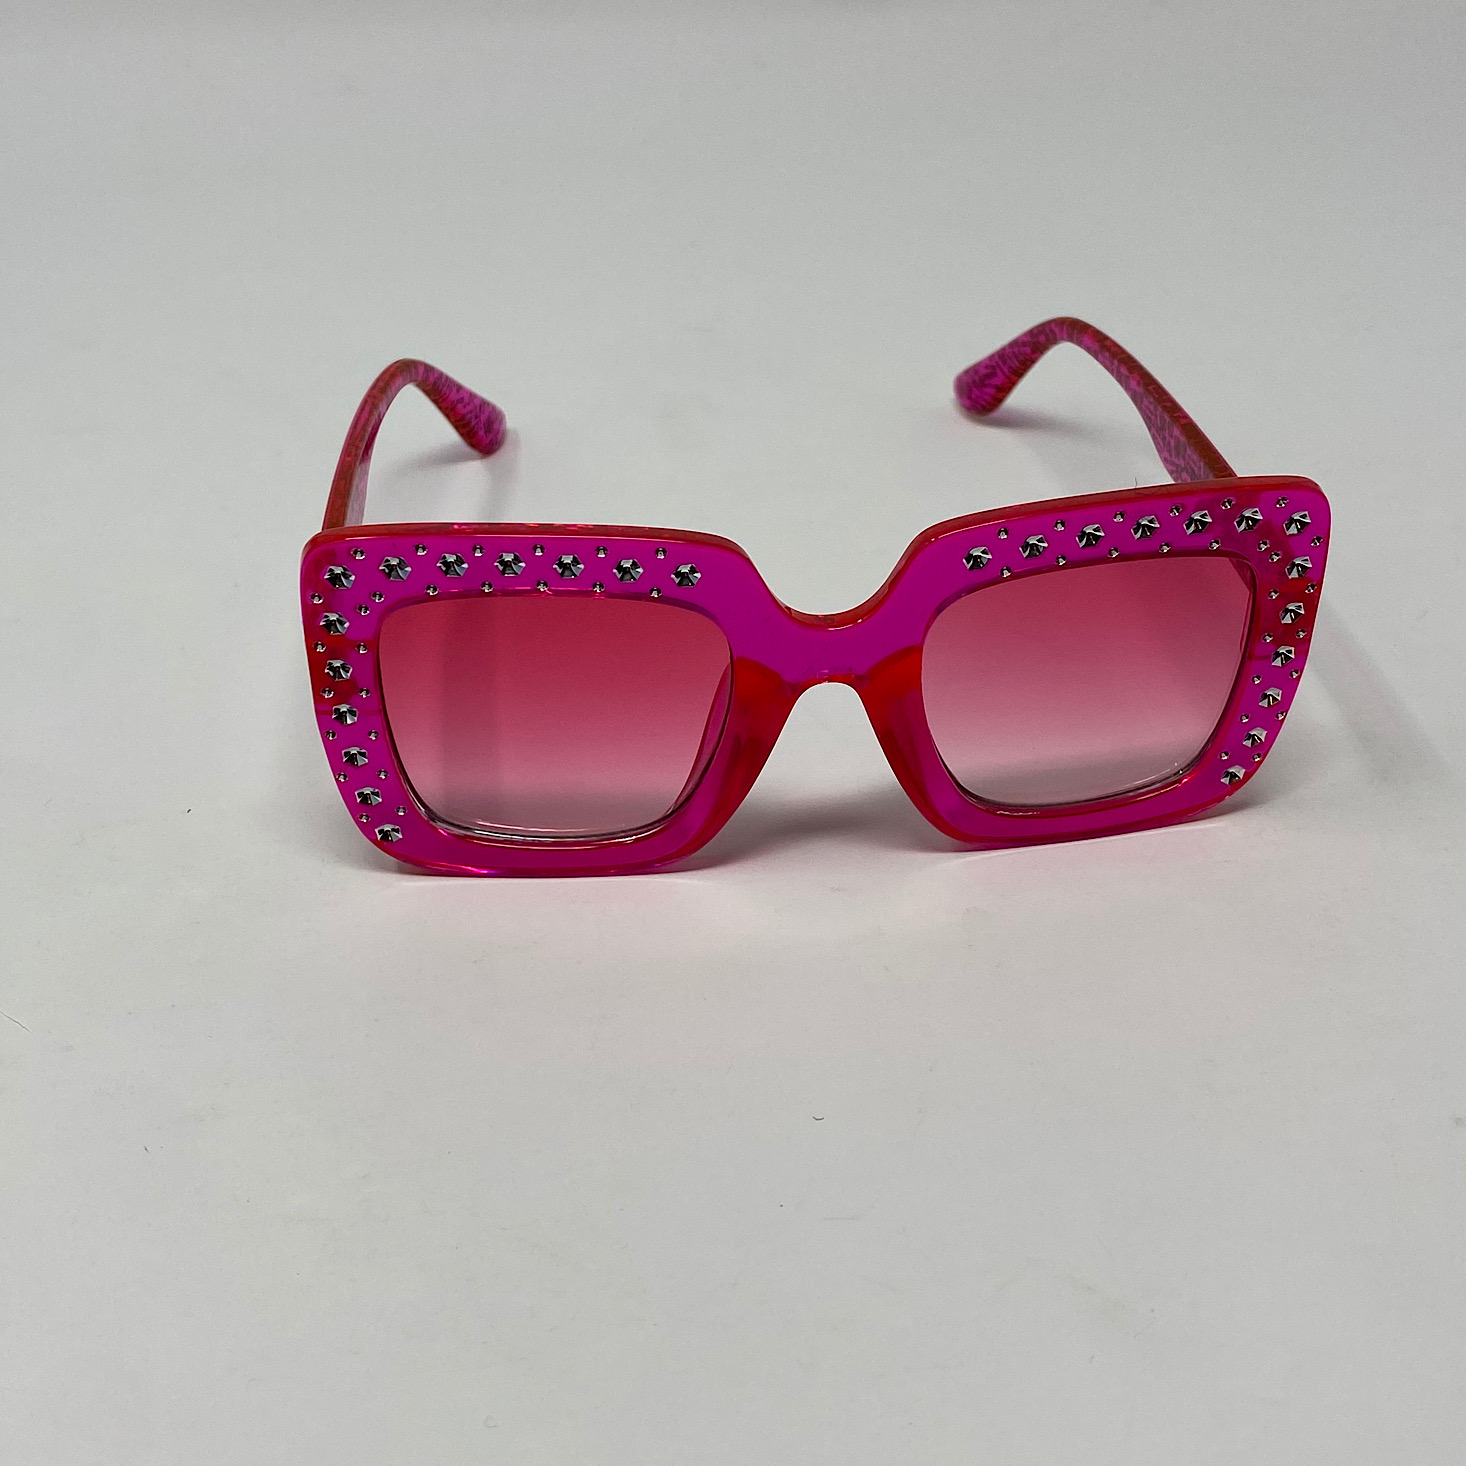 L.O.L. SURPRISE Bundle: SURPRISE POPPER & Hot Pink Sunglasses w Bow